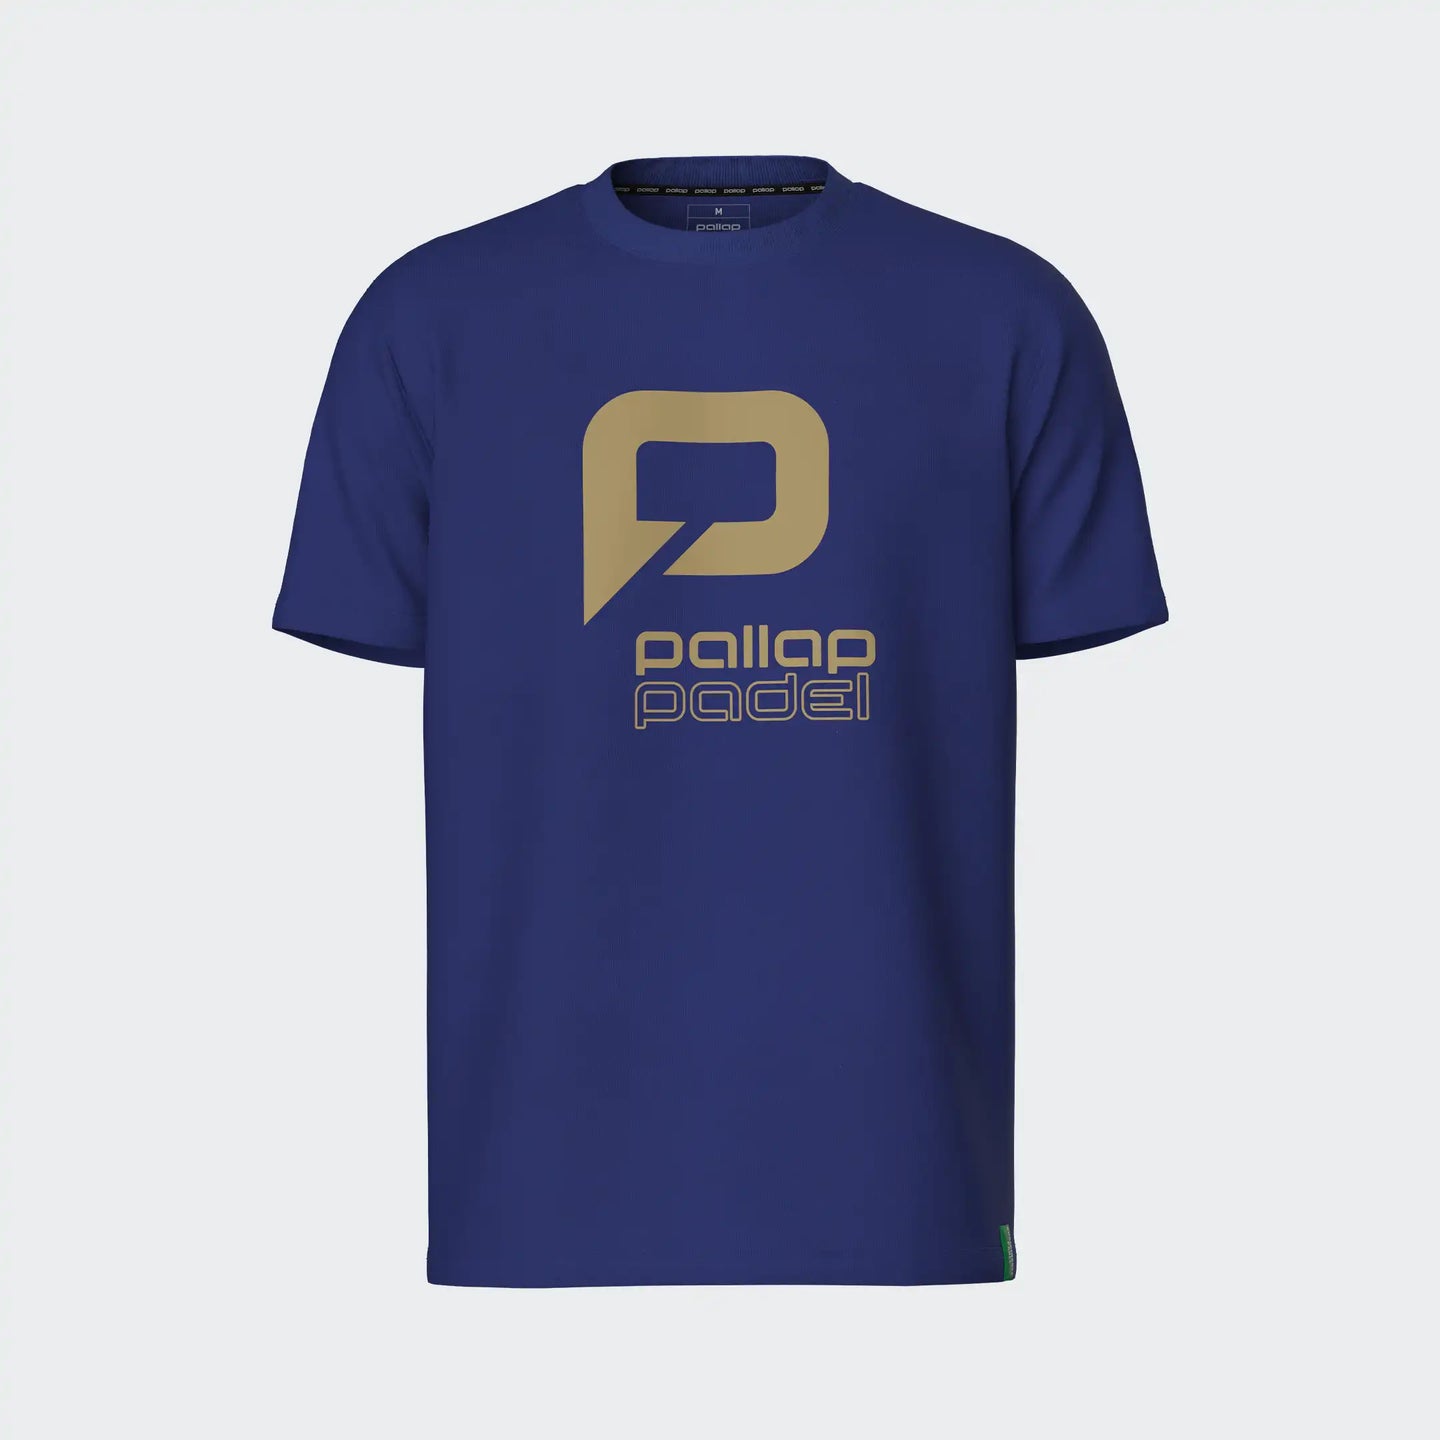 Camiseta del equipo Pallap para hombre